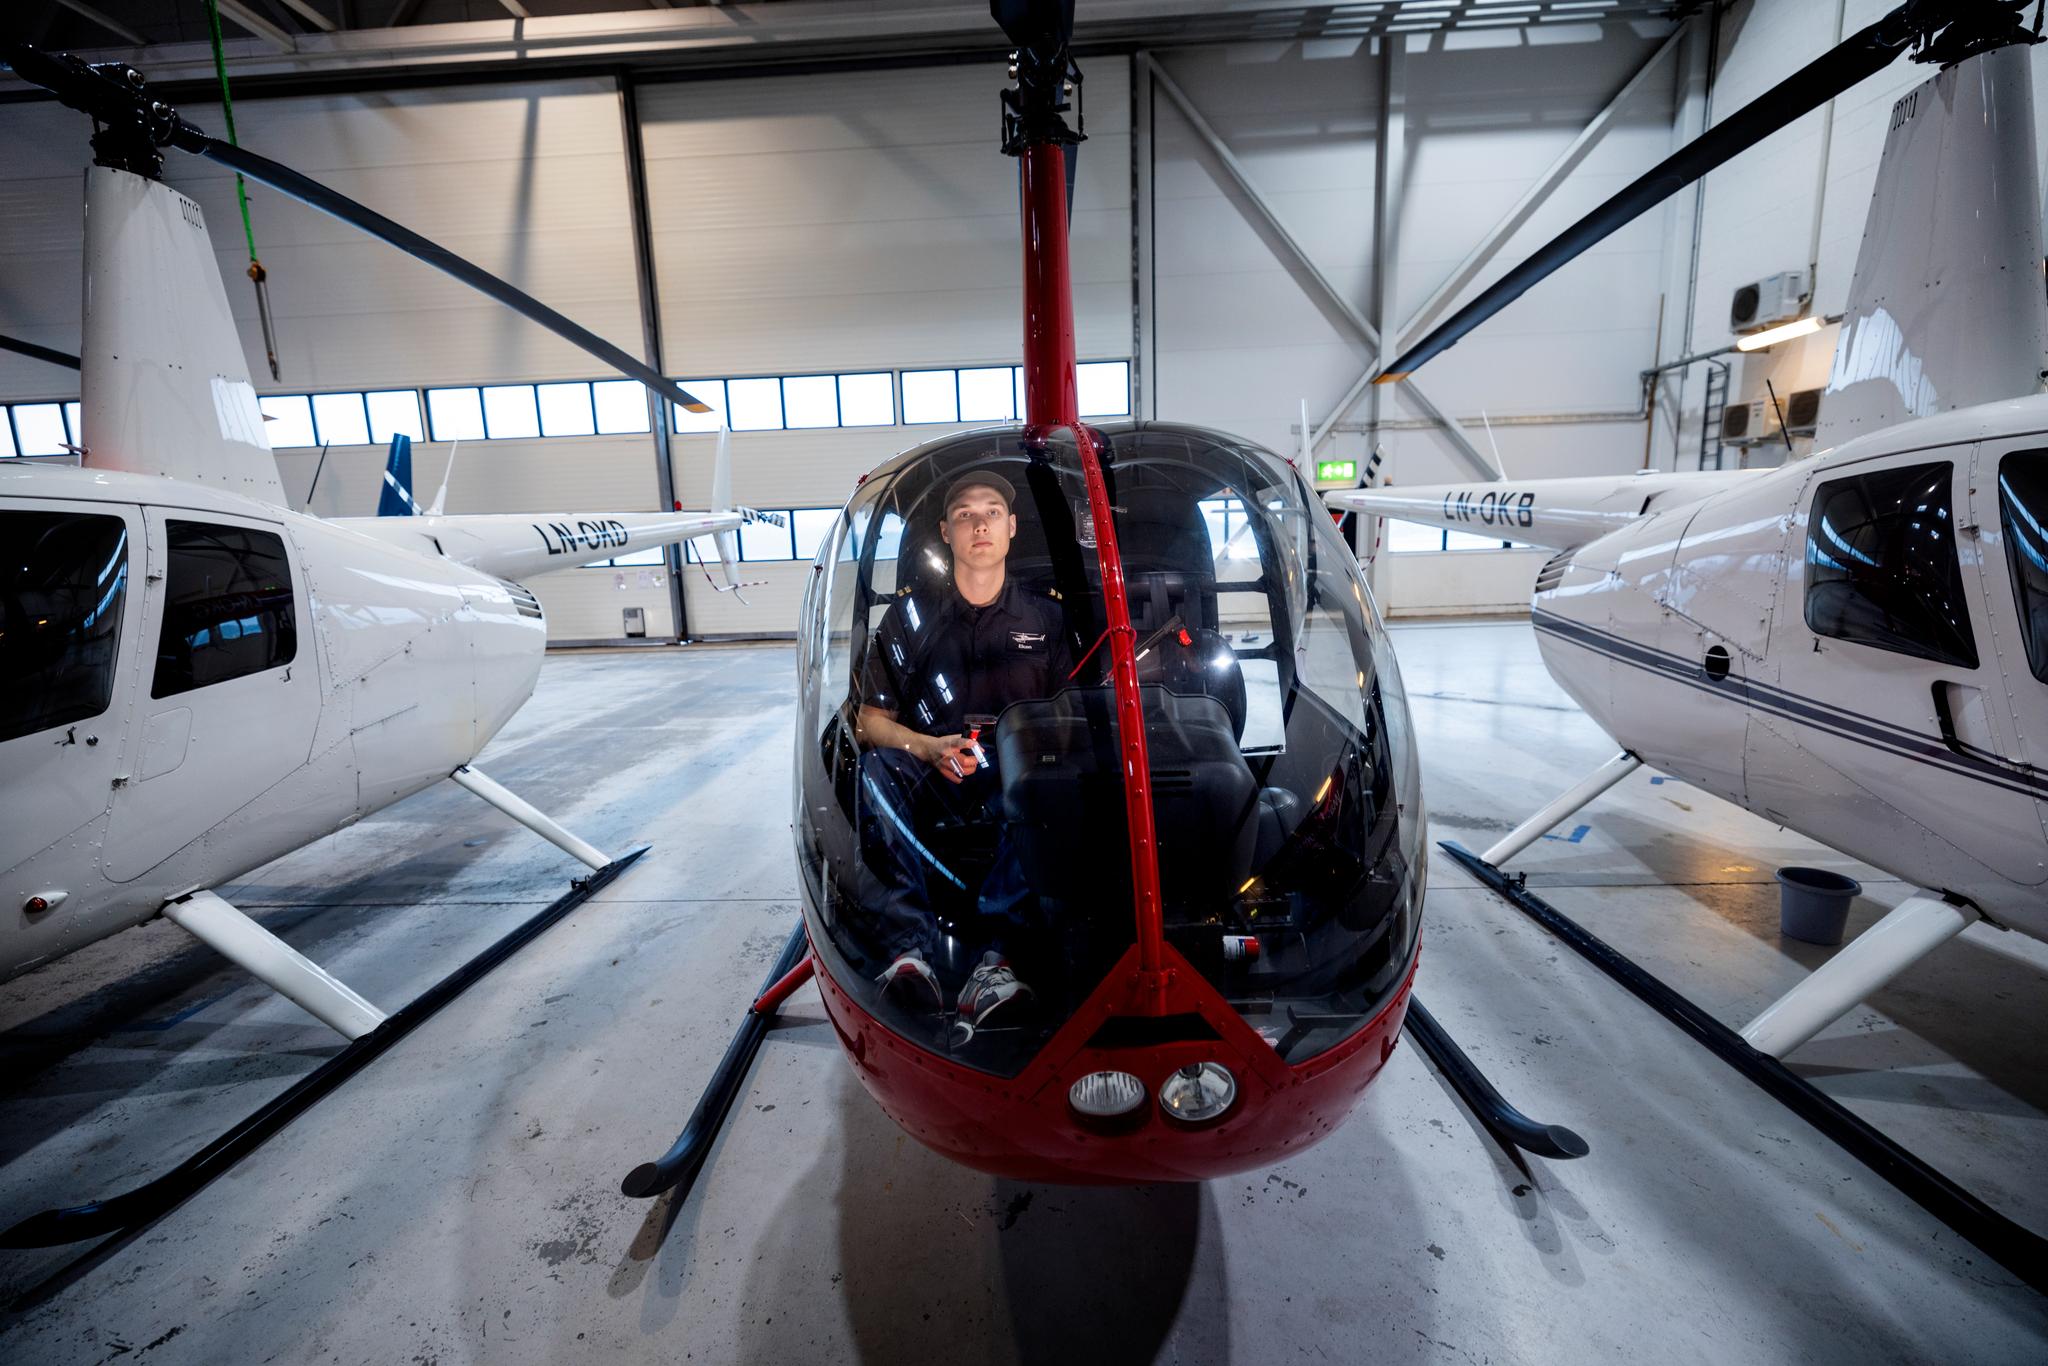 22 år gamle Preben Eken Nygård har tidligere jobbet som bilselger. Nå tar han helikopterpilotutdannelse ved European Helicopter Center på Torp. Han regner med å bruke to millioner kroner på skoletiden.